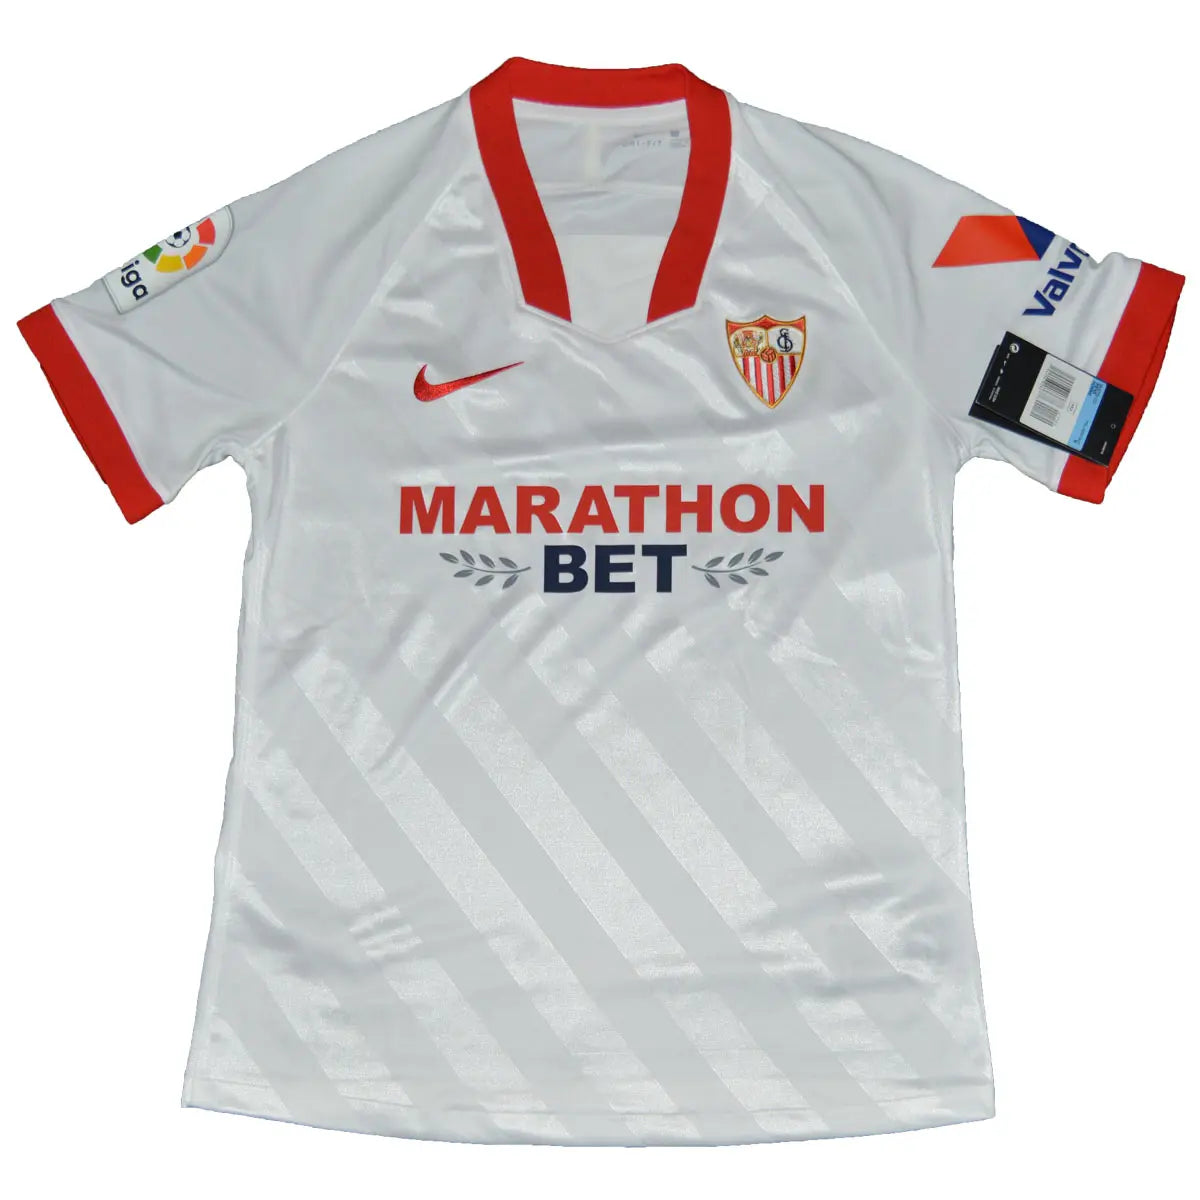 Maillot de foot rétro/vintage authentique blanc et rouge domicile Nike du FC Seville 2020-2021